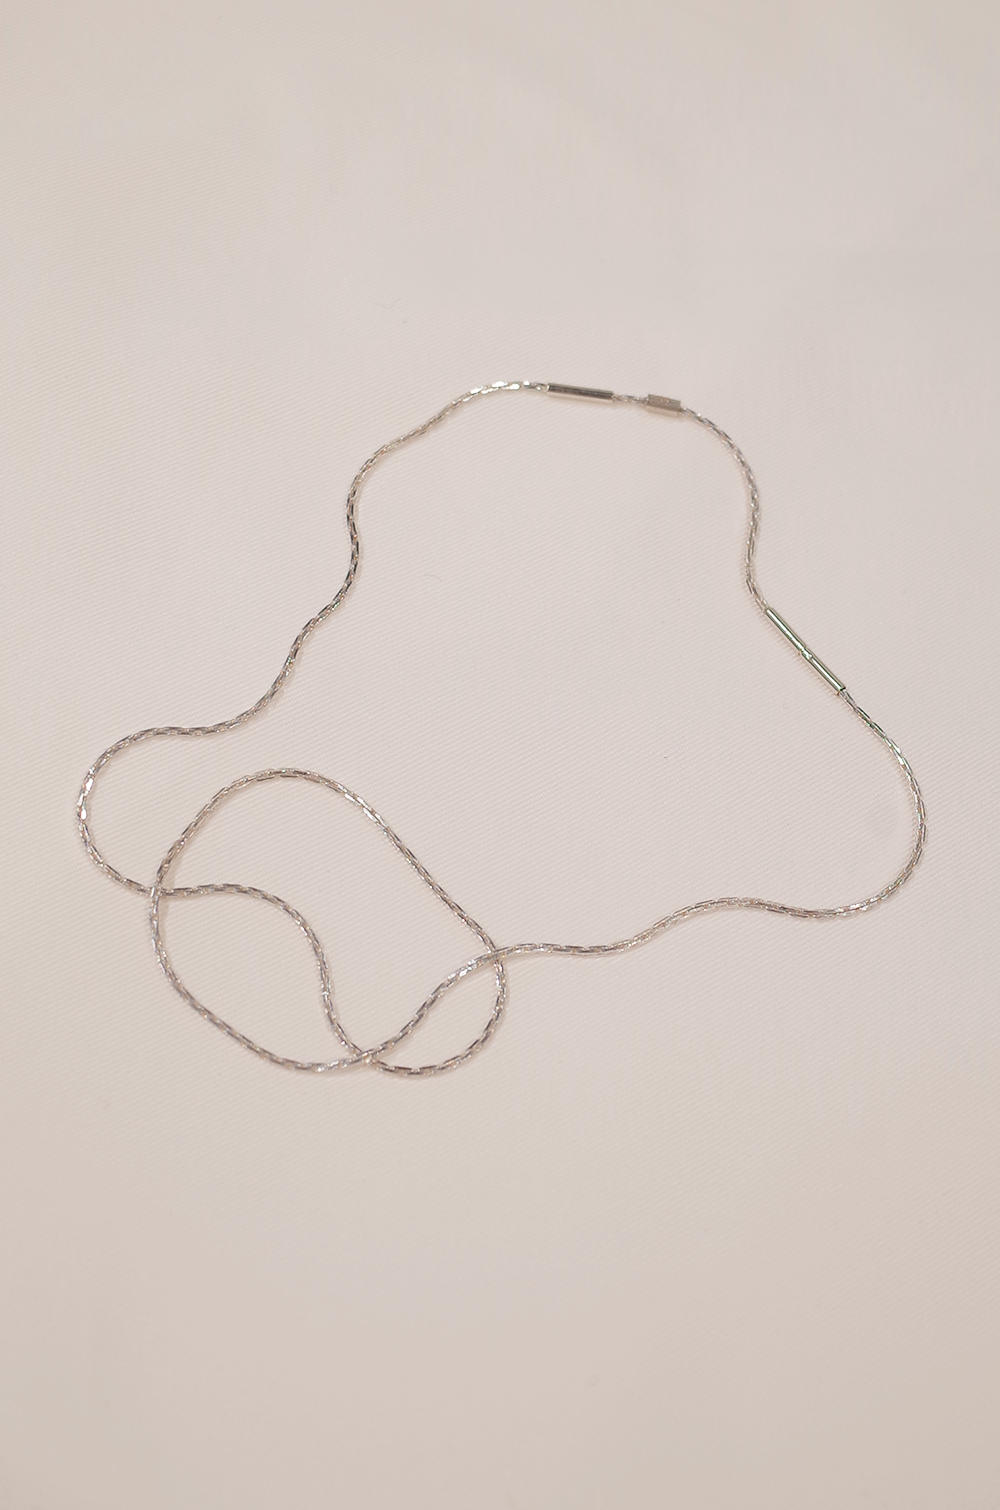 Necklace / Simon